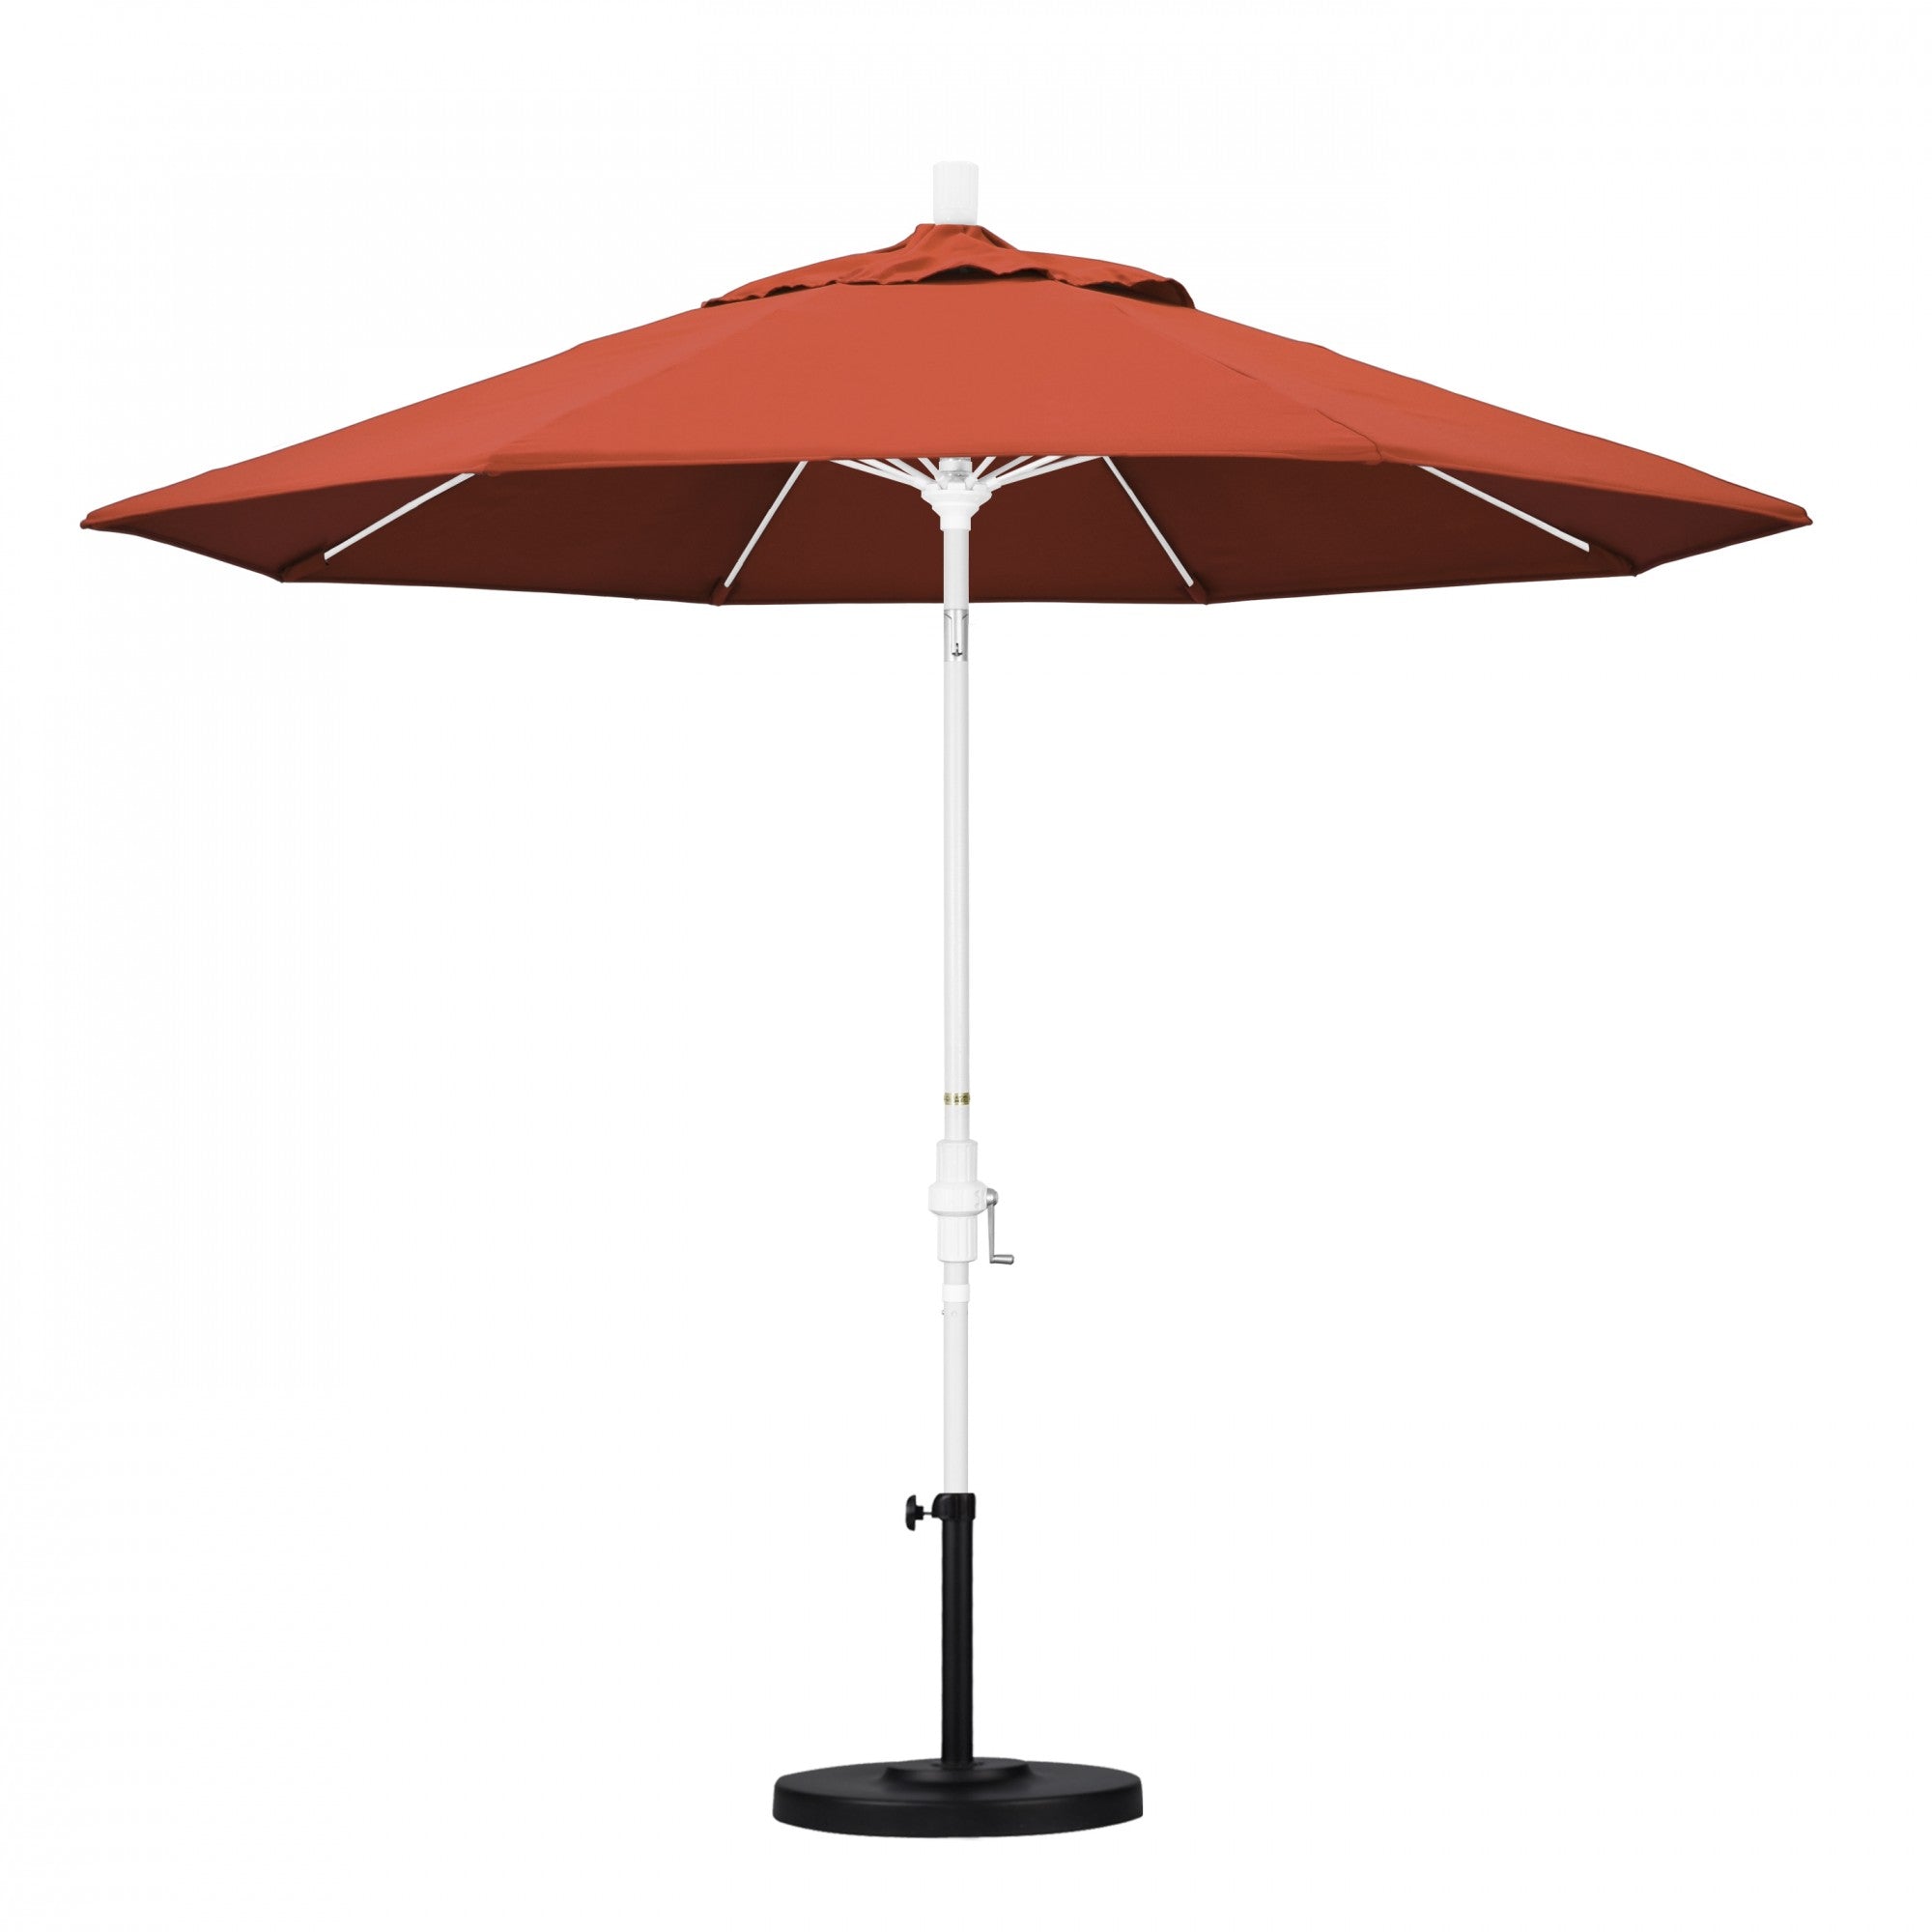 California Umbrella - 9' - Patio Umbrella Umbrella - Aluminum Pole - Sunset - Olefin - GSCUF908170-F27